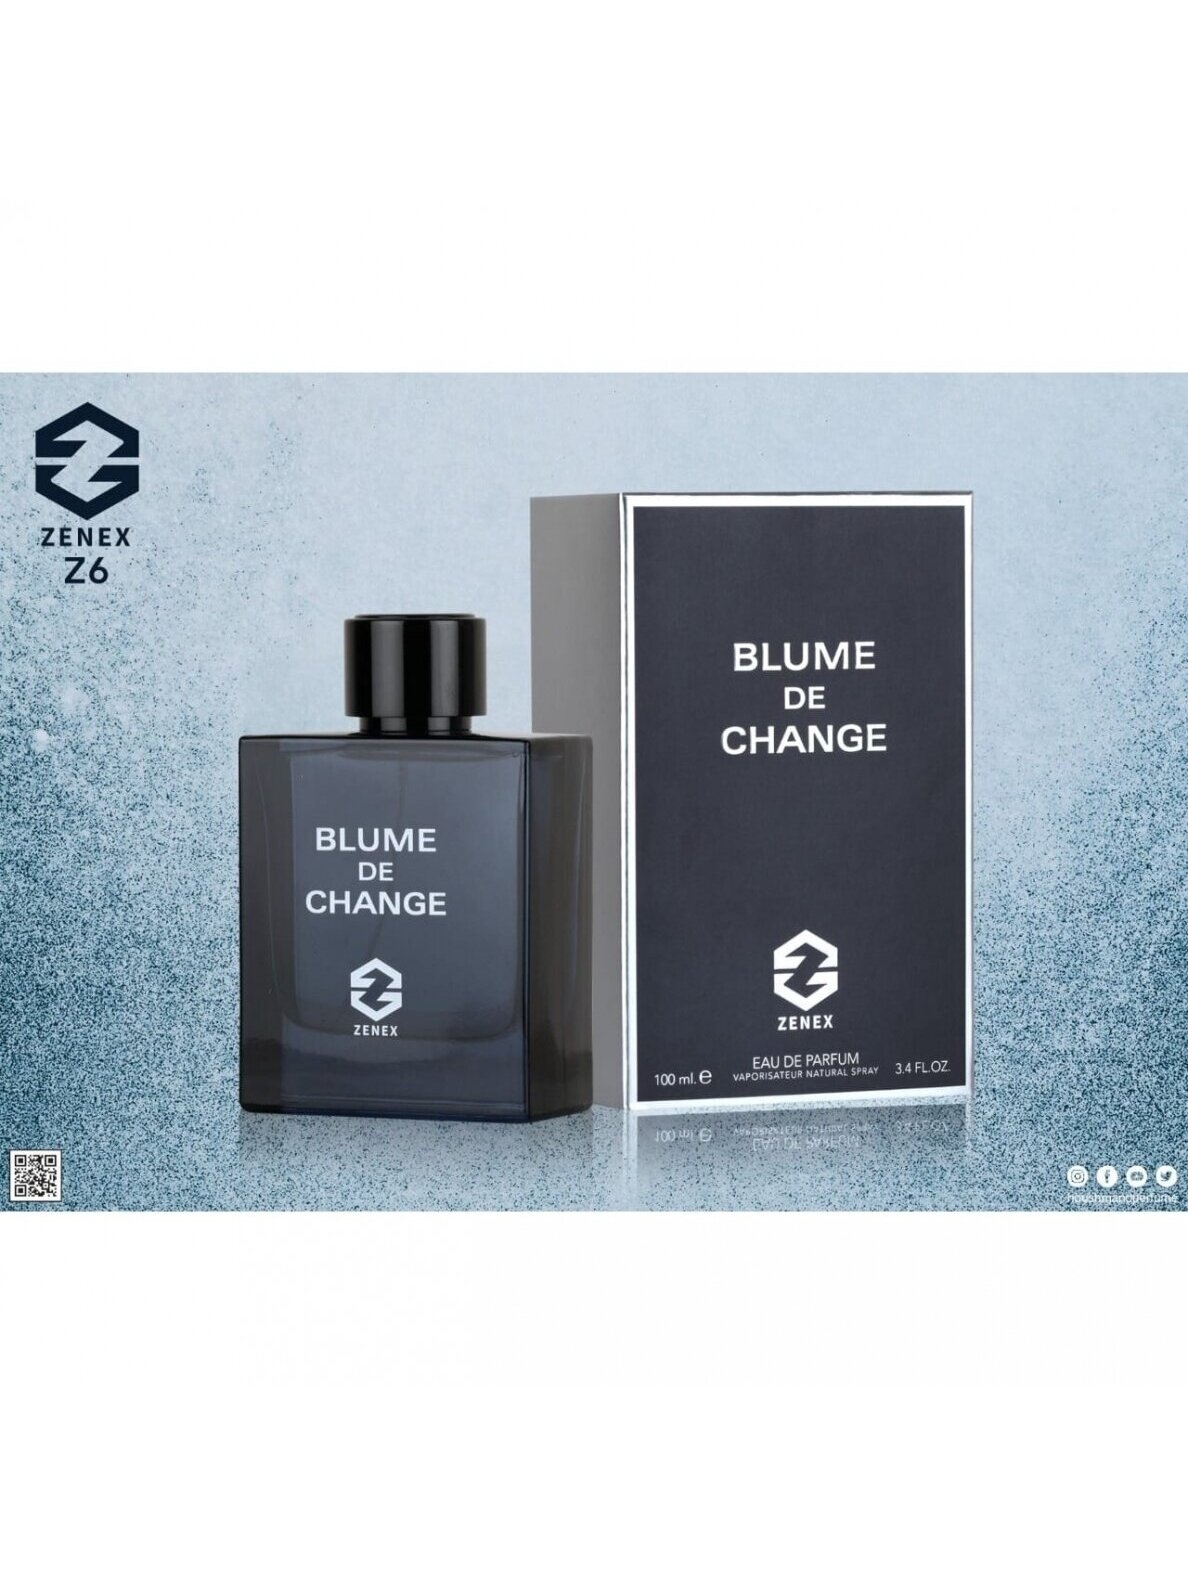 Chanel bleu de chanel parfum чоловічий парфум шанель 100мо оригінал парфуми   цена 3400 грн в каталоге Парфюмерия  Купить товары для красоты и  здоровья по доступной цене на Шафе  Украина 44947871